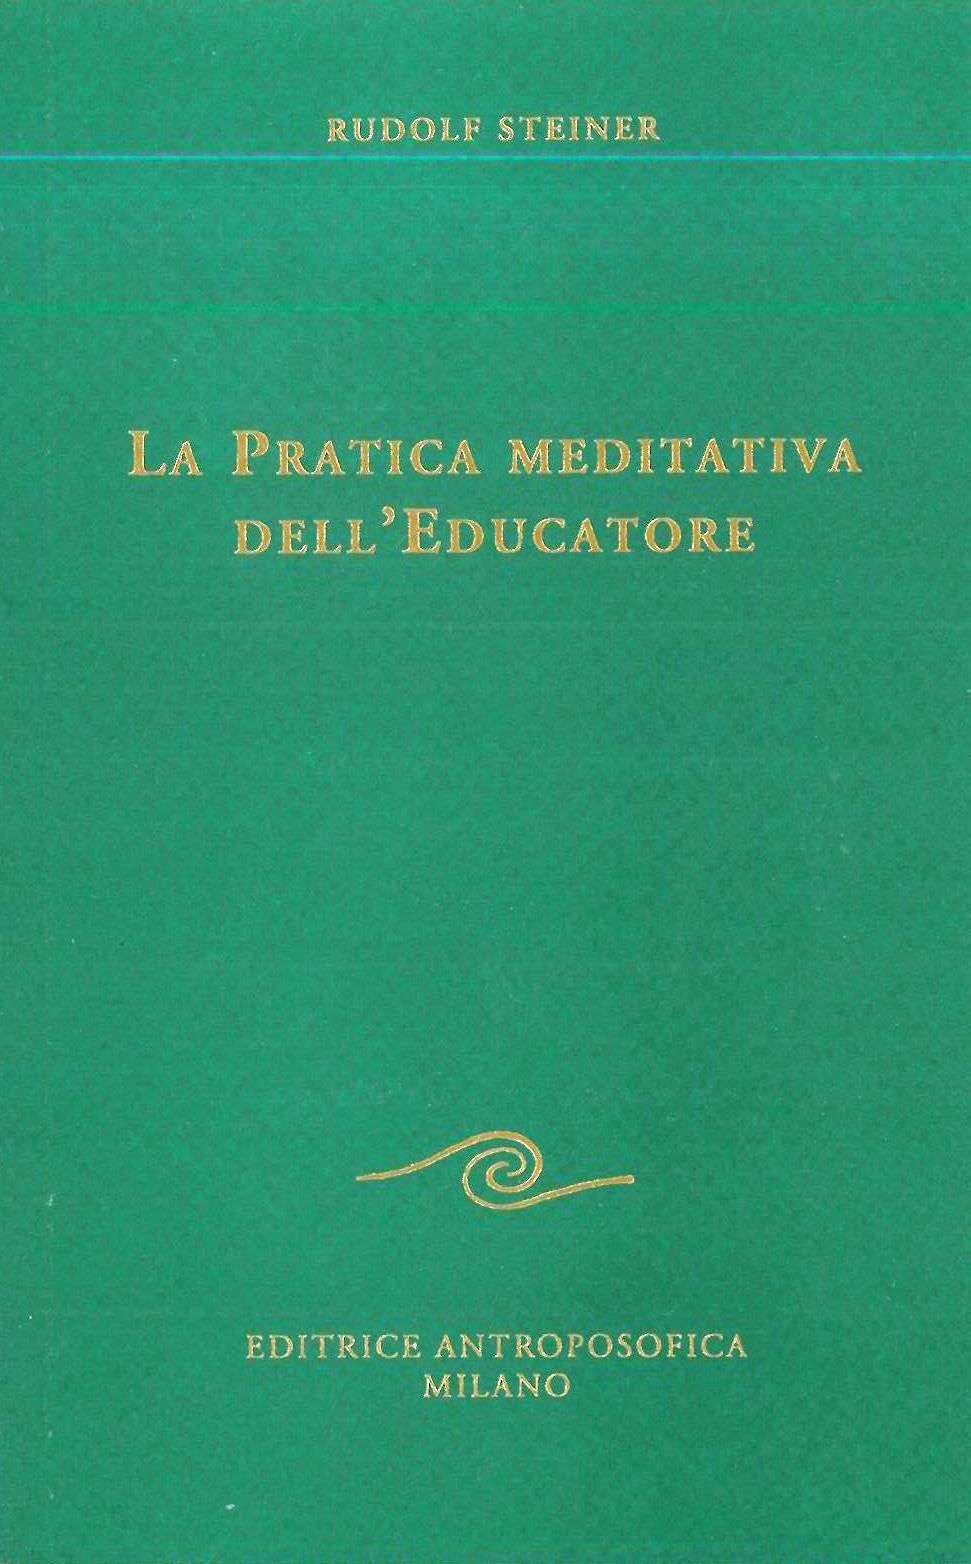 La pratica meditativa dell'educatore - Rudolf Steiner